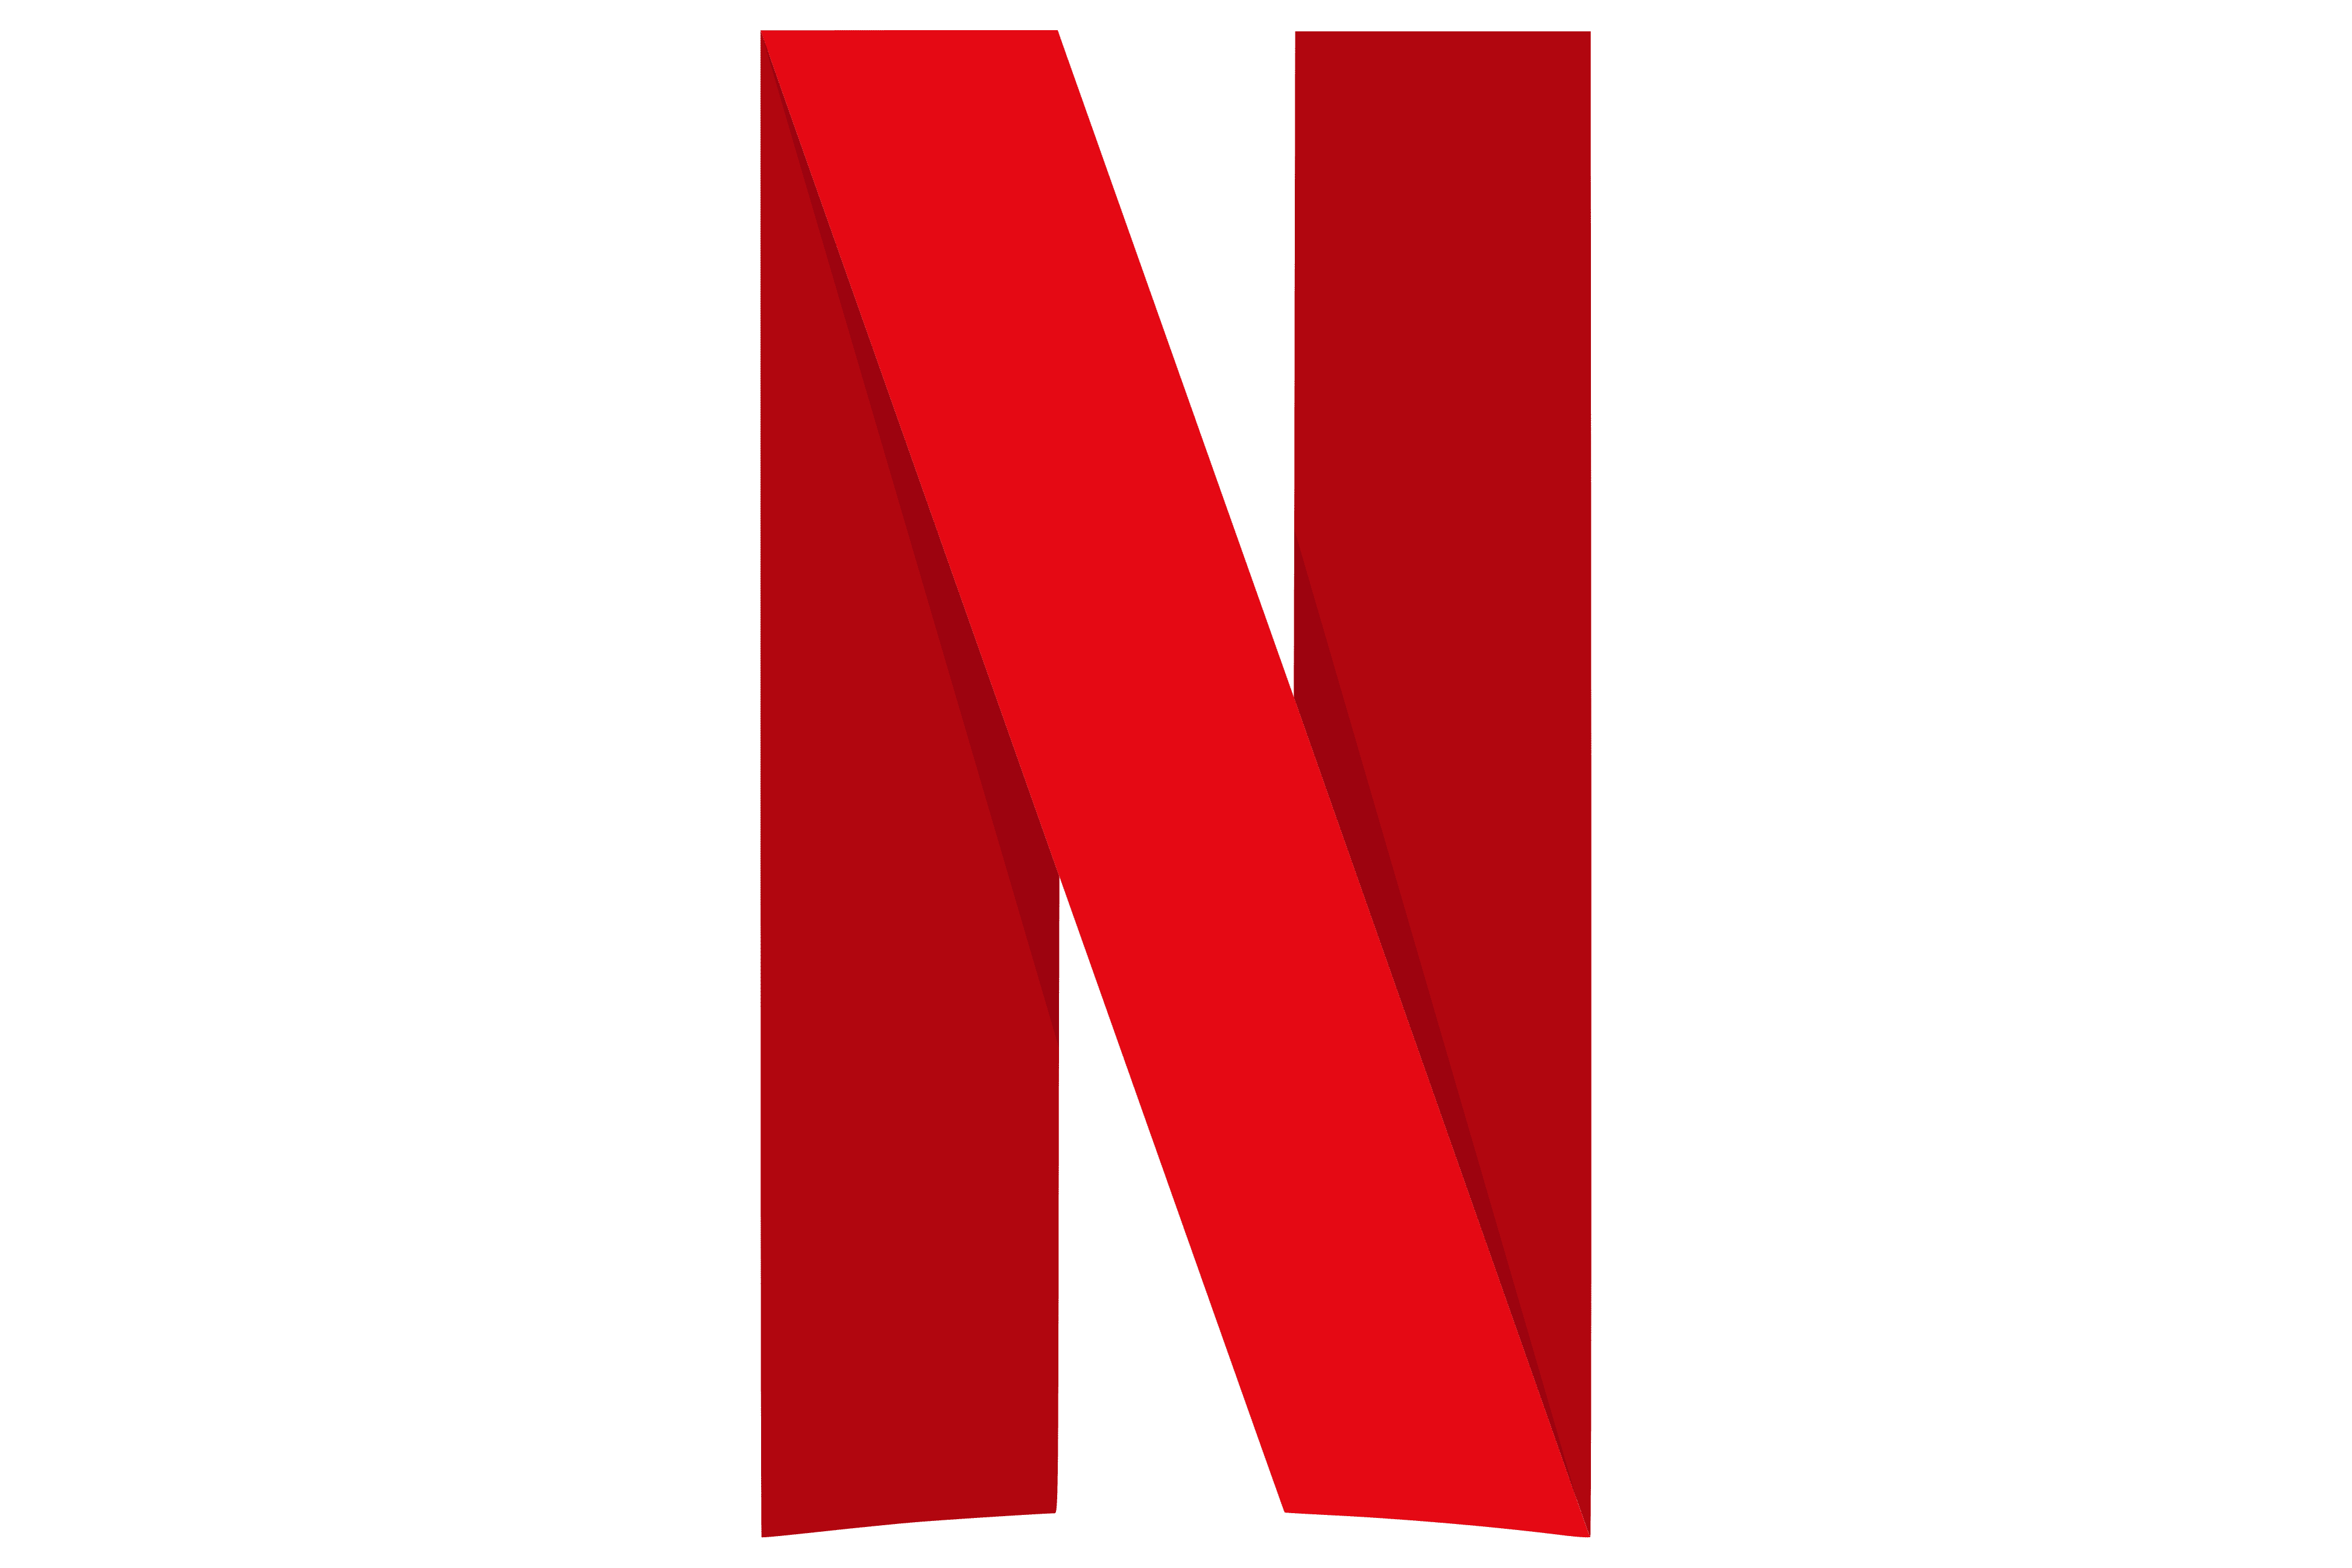 Netflix Logo PNG Pic